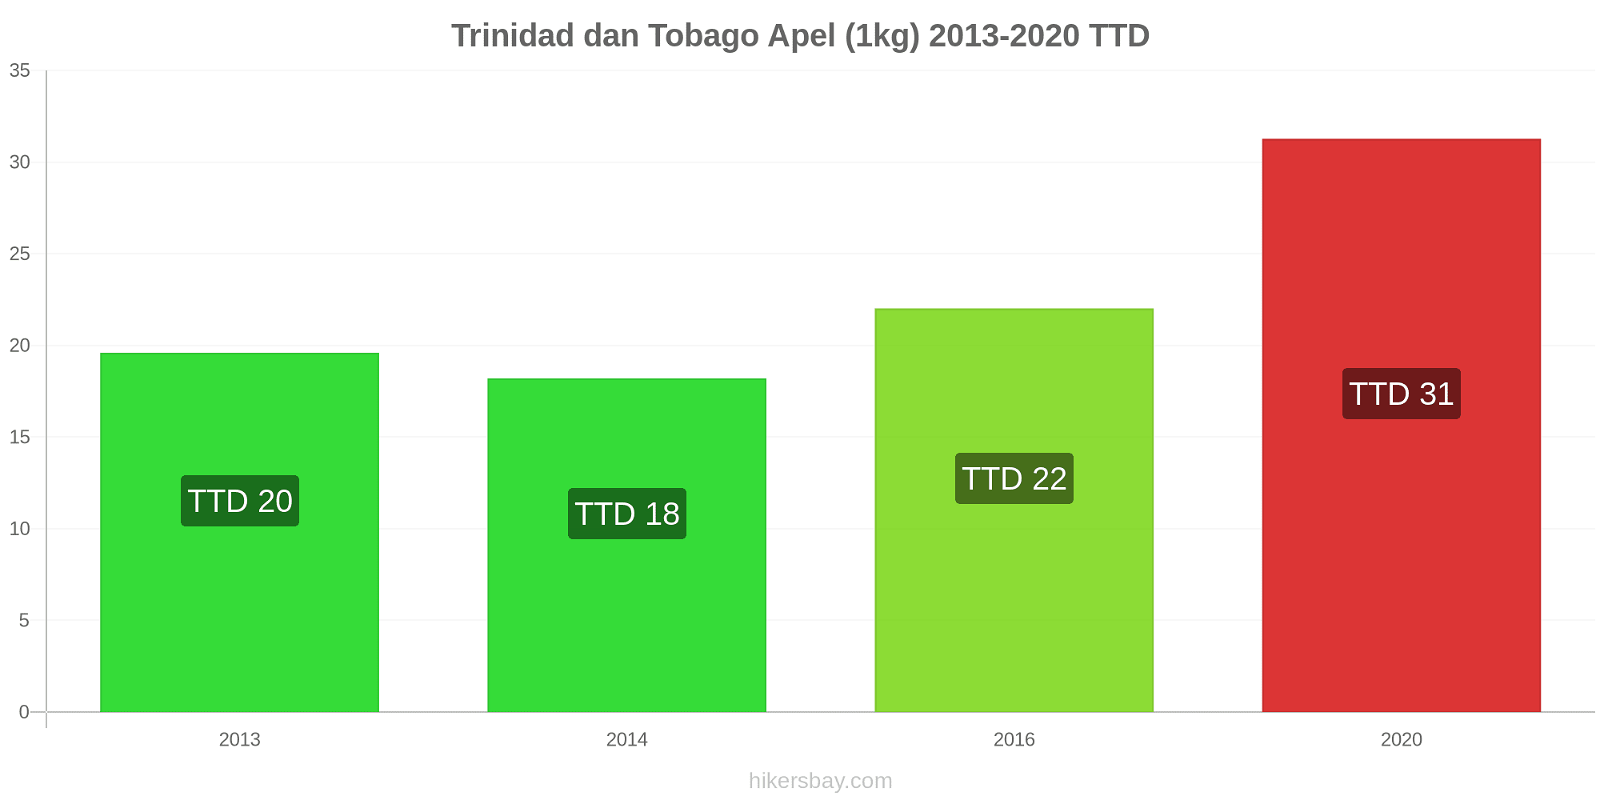 Trinidad dan Tobago perubahan harga Apel (1kg) hikersbay.com